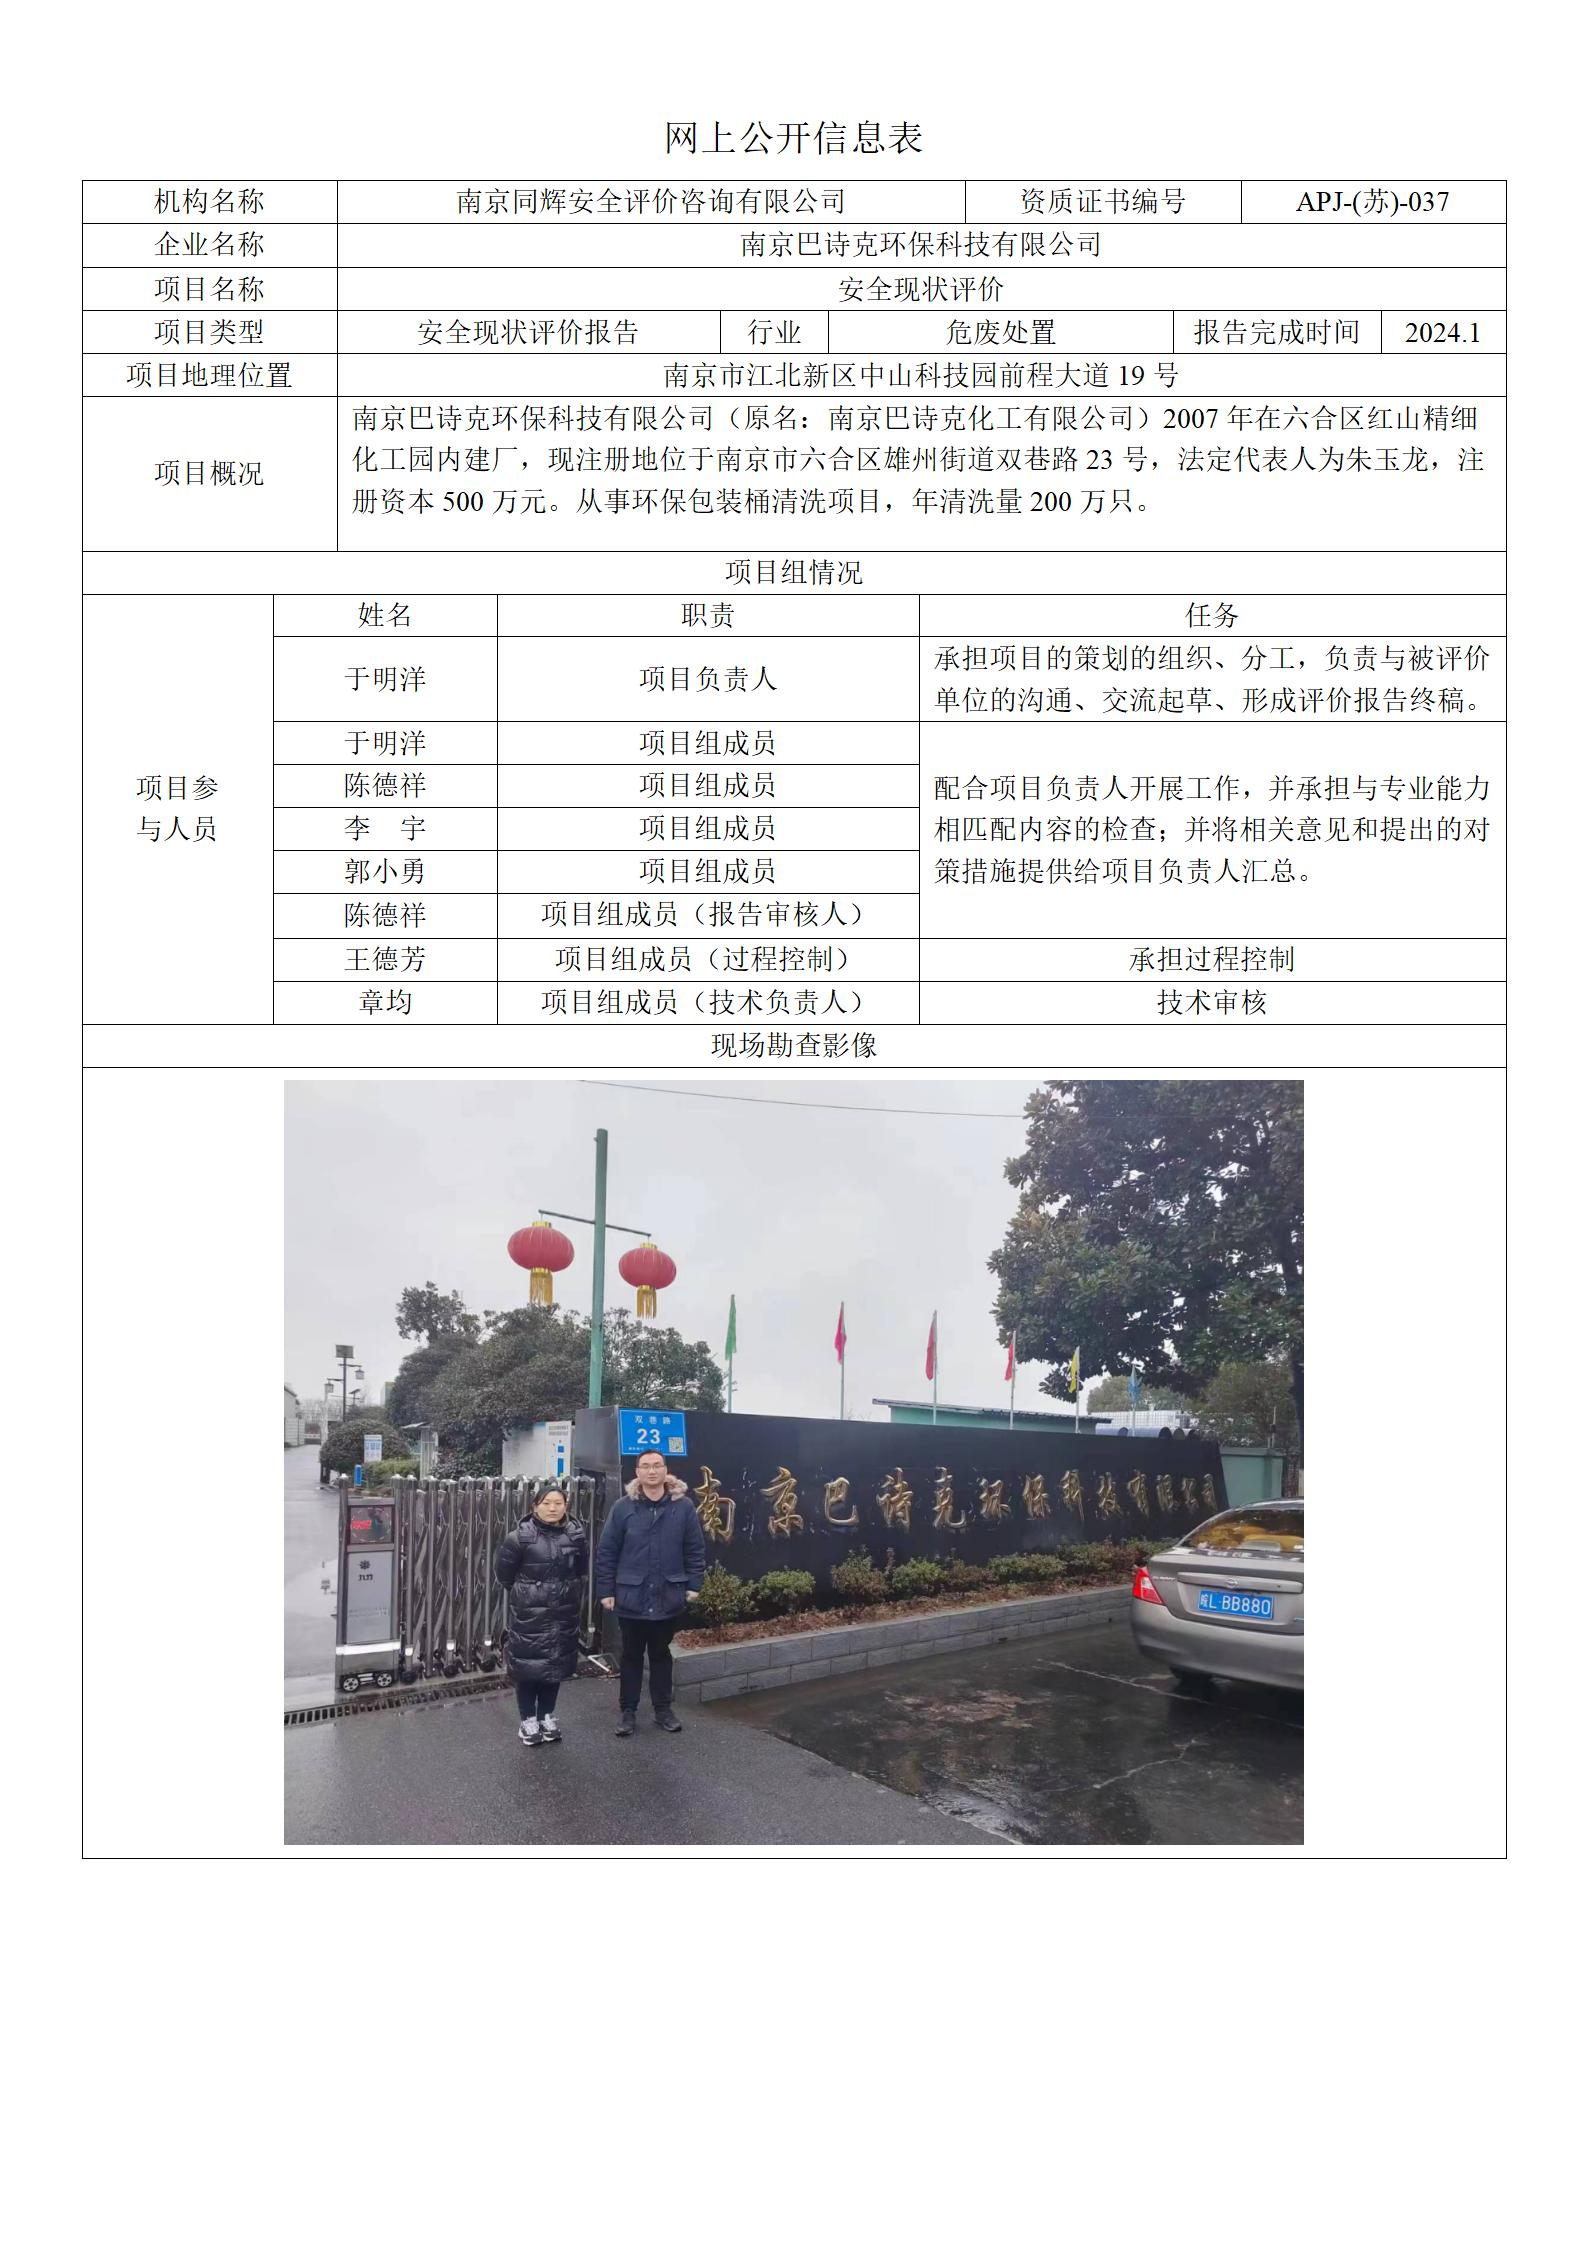 13 2401南京巴诗克现状评价报告网上公开信息表_01.jpg